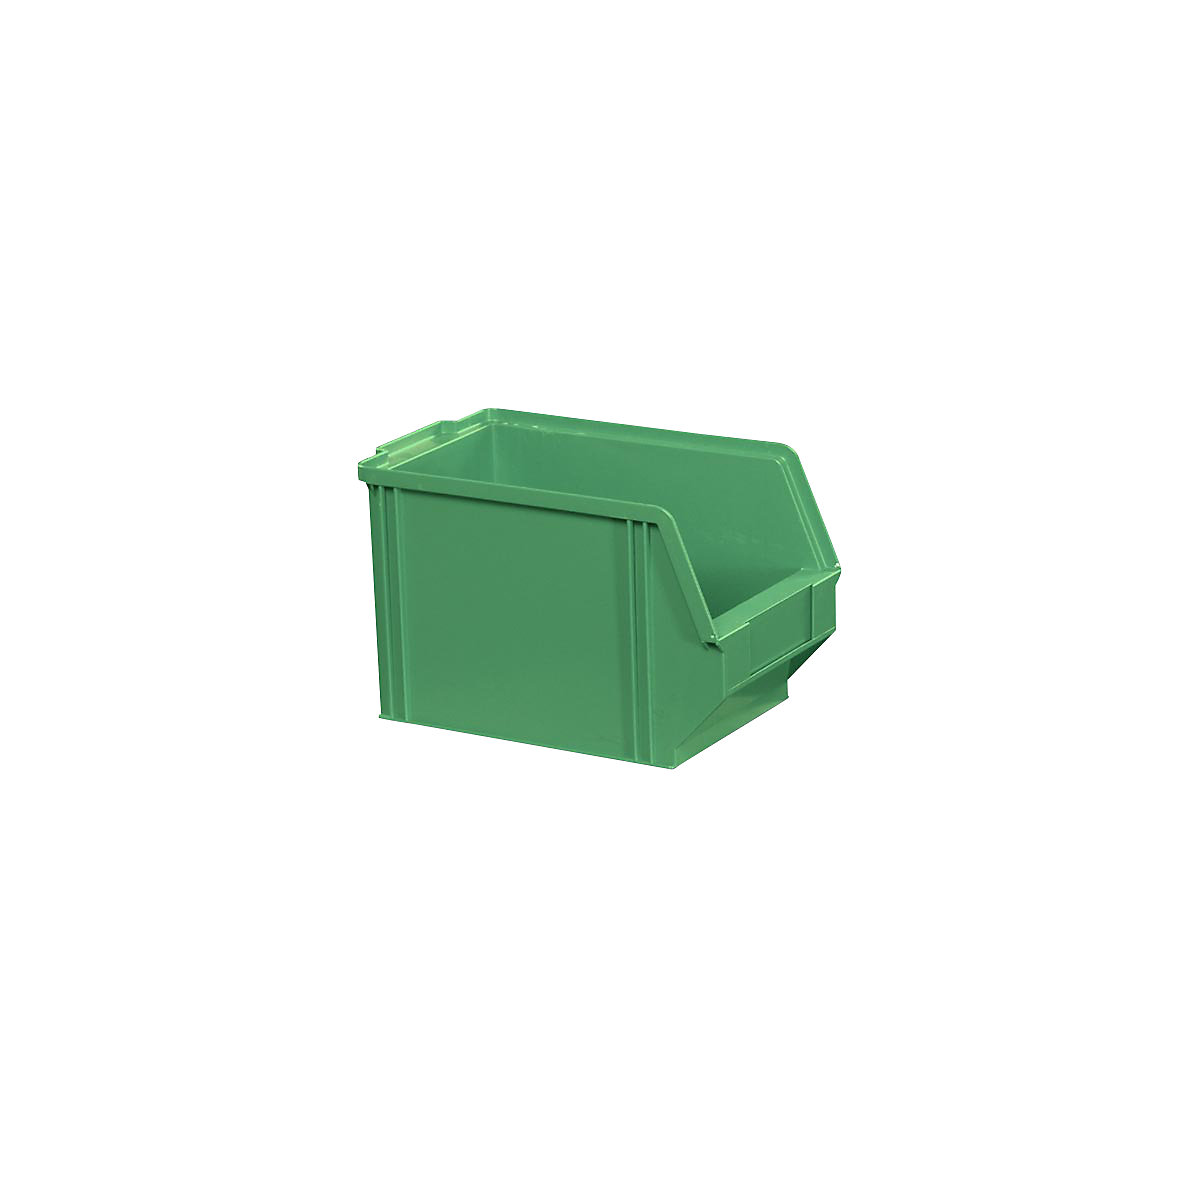 Sichtlagerkasten aus Polystyrol, Länge 230 mm, BxH 146 x 150 mm, VE 40 Stk, grün-10